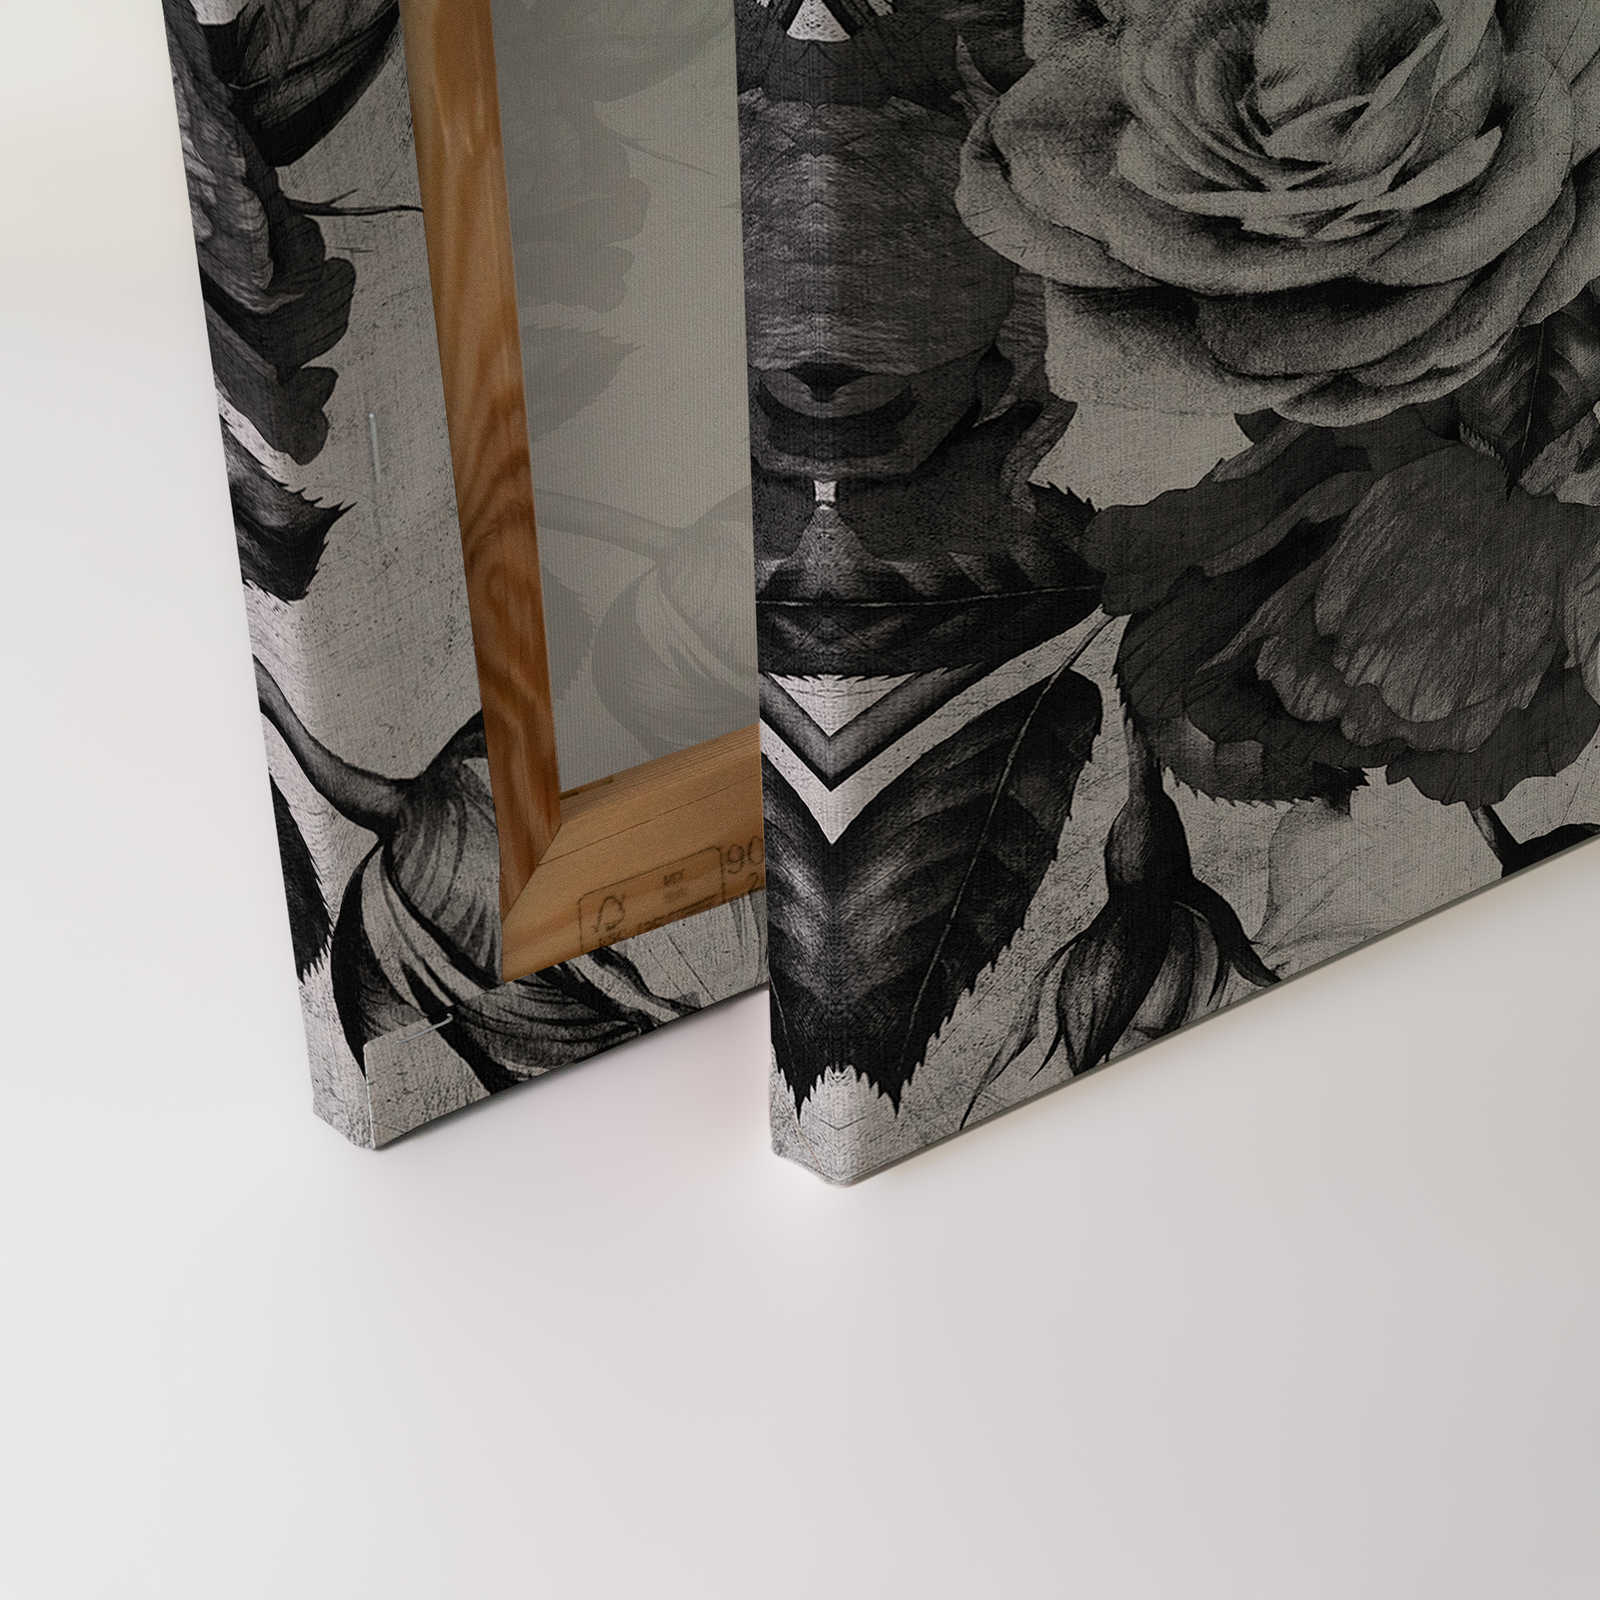             Spanish rose 1 - Toile de roses avec fleurs en noir et blanc - 0,90 m x 0,60 m
        